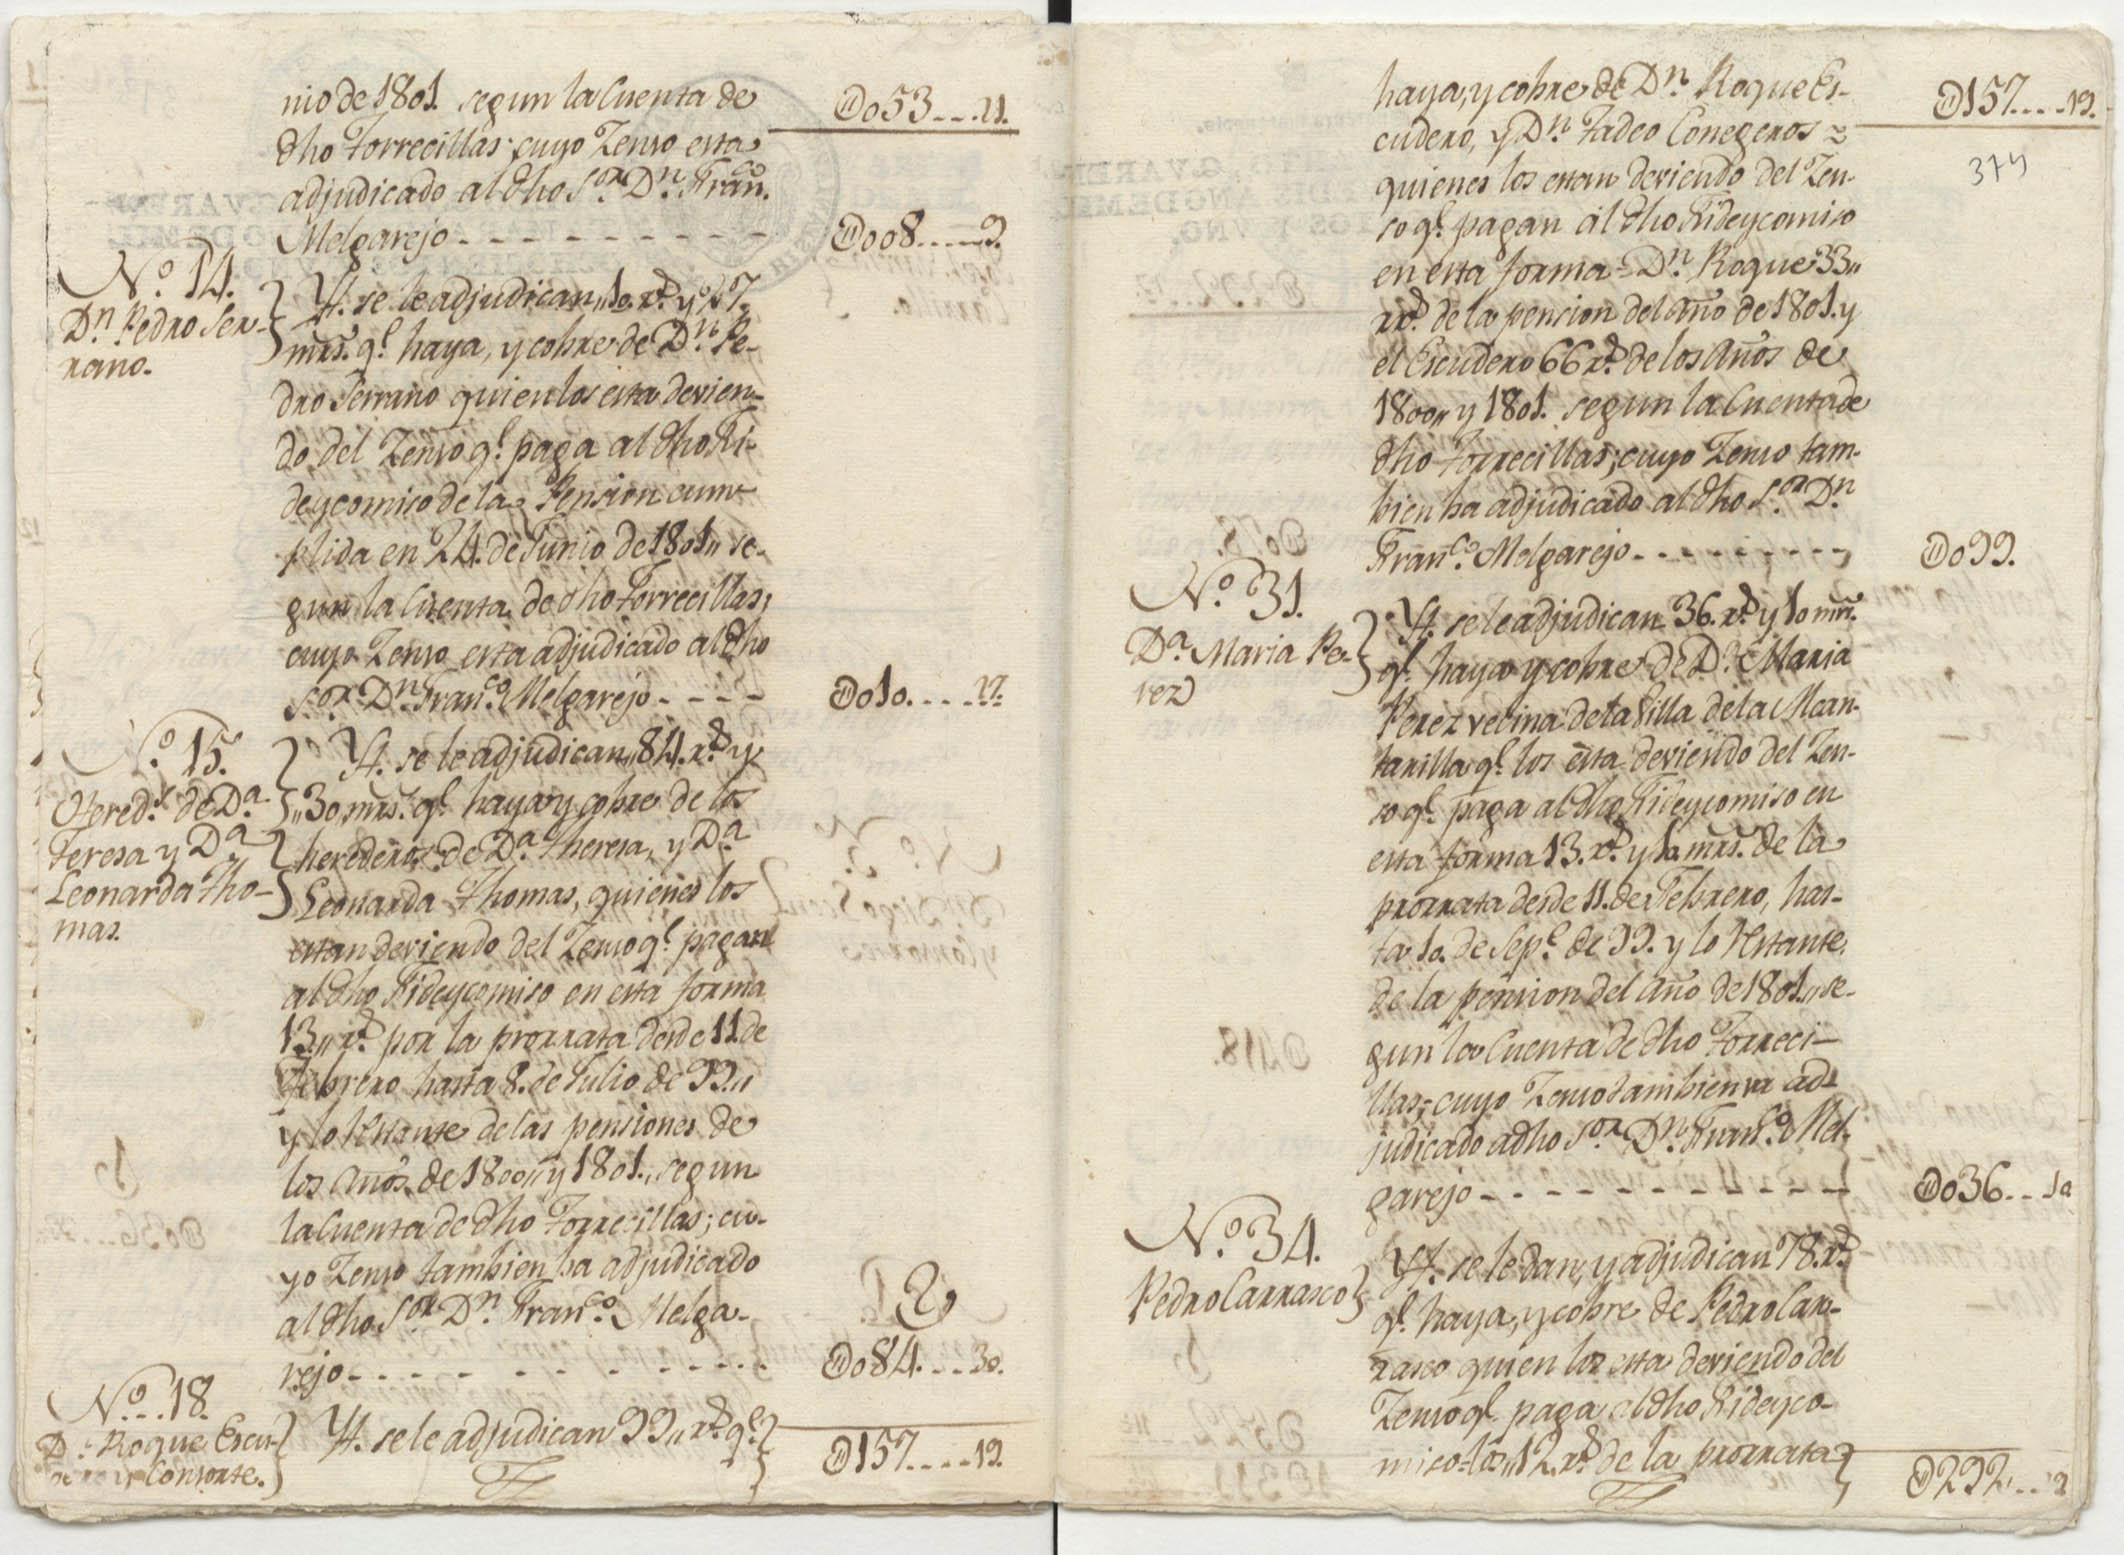 Registro de Ignacio Fernández Rubio, Murcia de 1801.